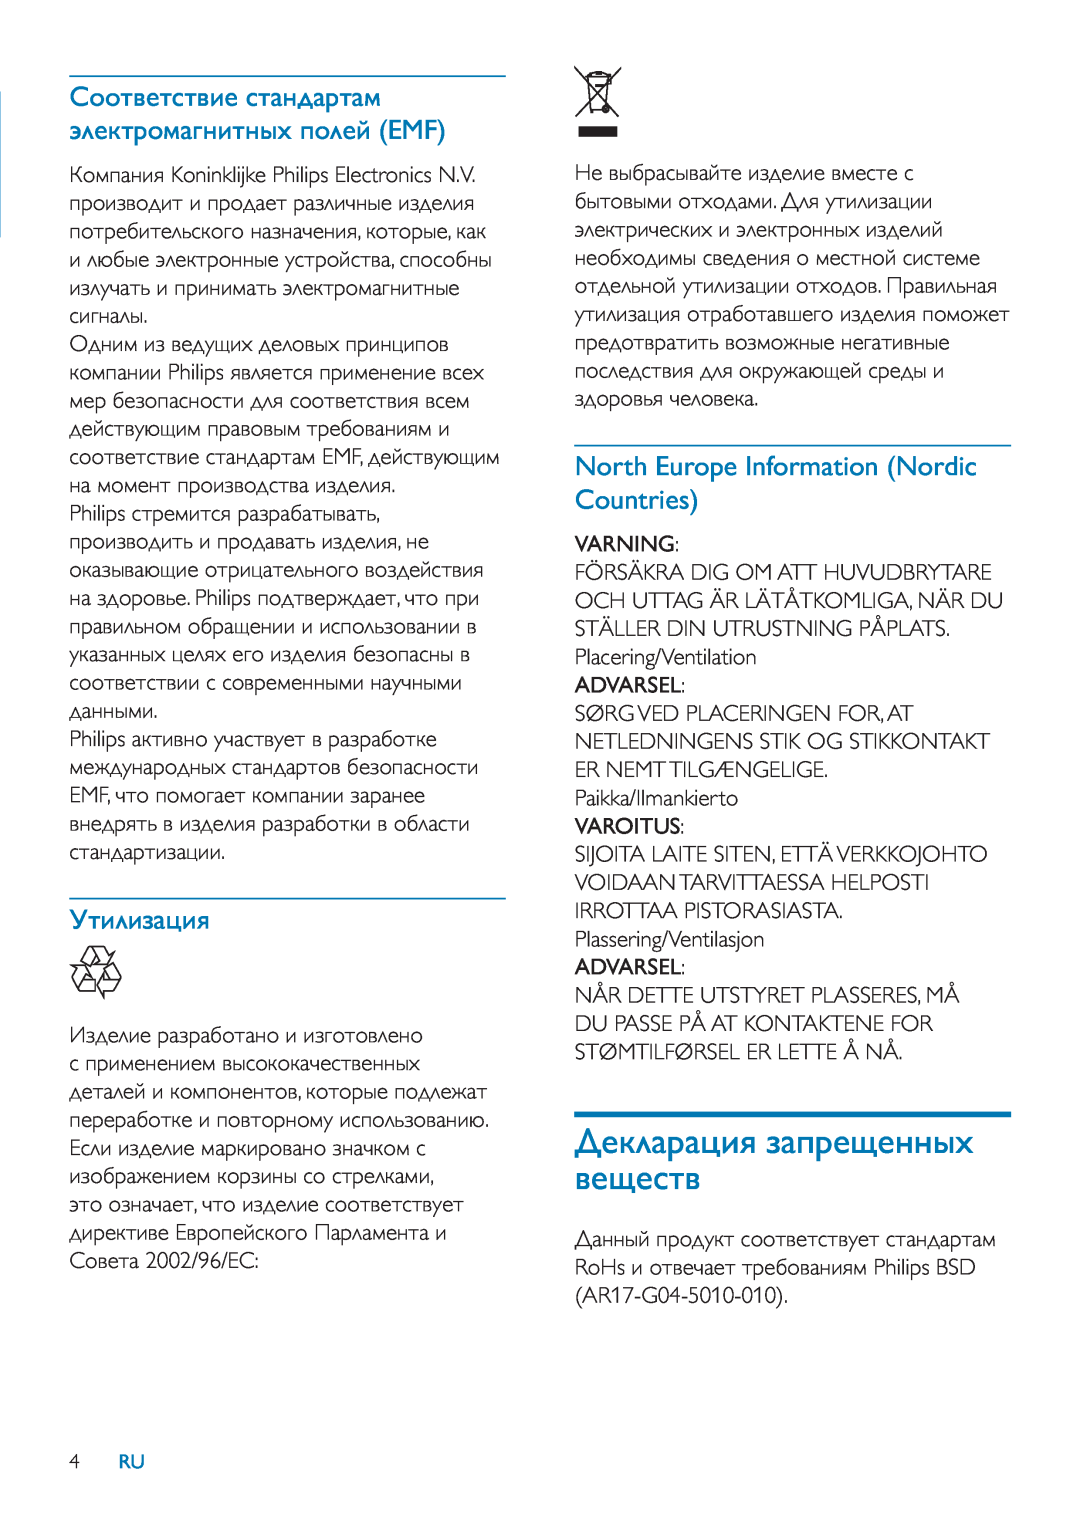 Philips SPF2107 ǠǿǵǸǵǴǭȃǵȌ, North Europe Information Nordic Countries, ǑǲǷǸǭǽǭȃǵȌ ǴǭǼǽǲȆǲǺǺȈȂ ǯǲȆǲǾǿǯ, Varning, Varoitus 